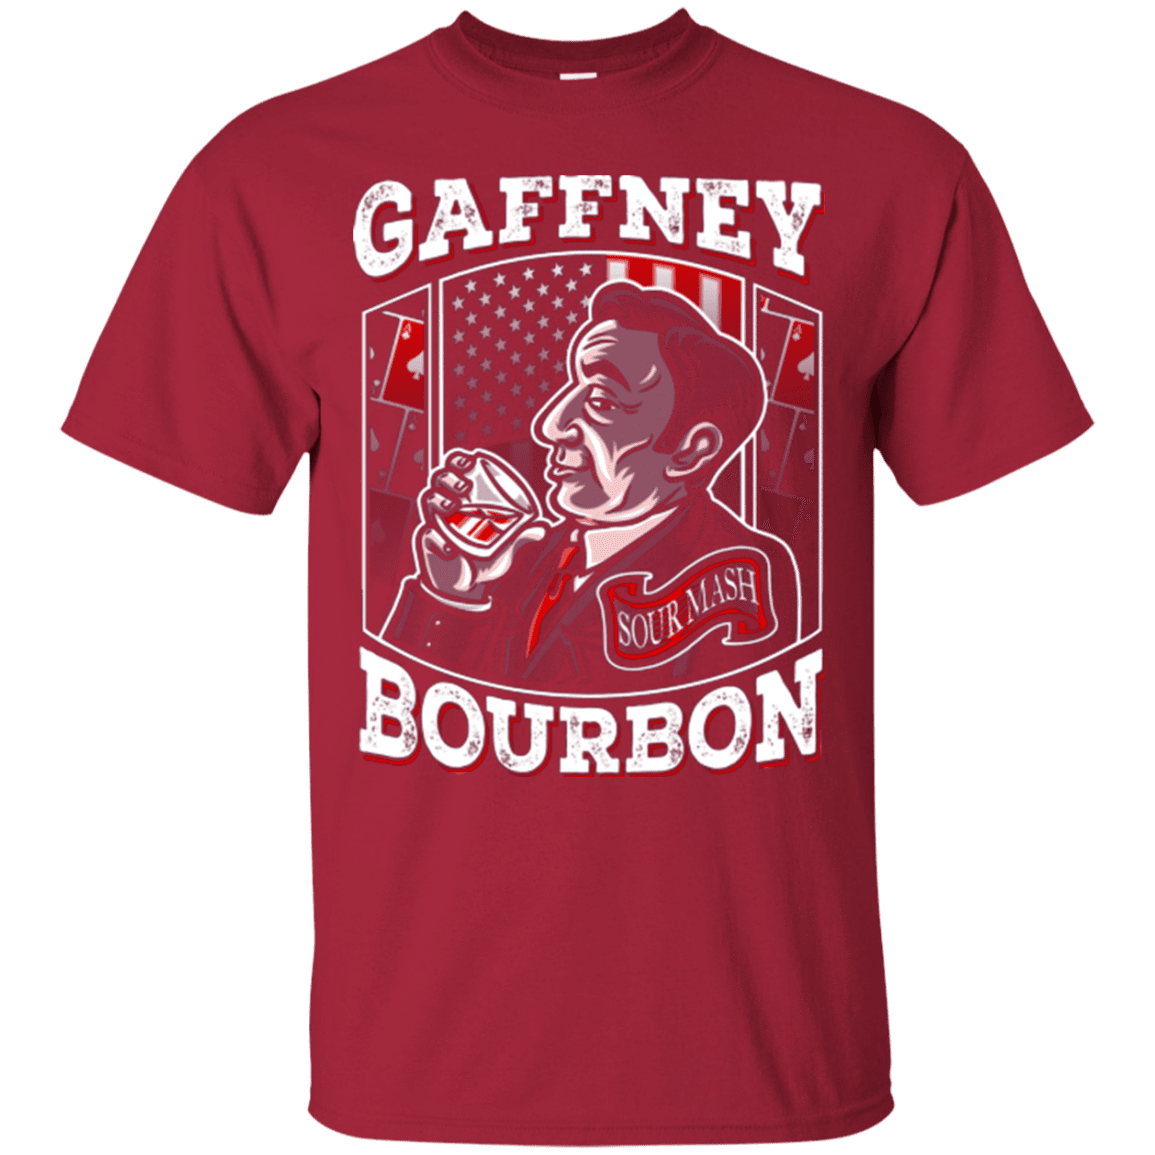 T-Shirts Cardinal / Small Gaffney Bourbon T-Shirt